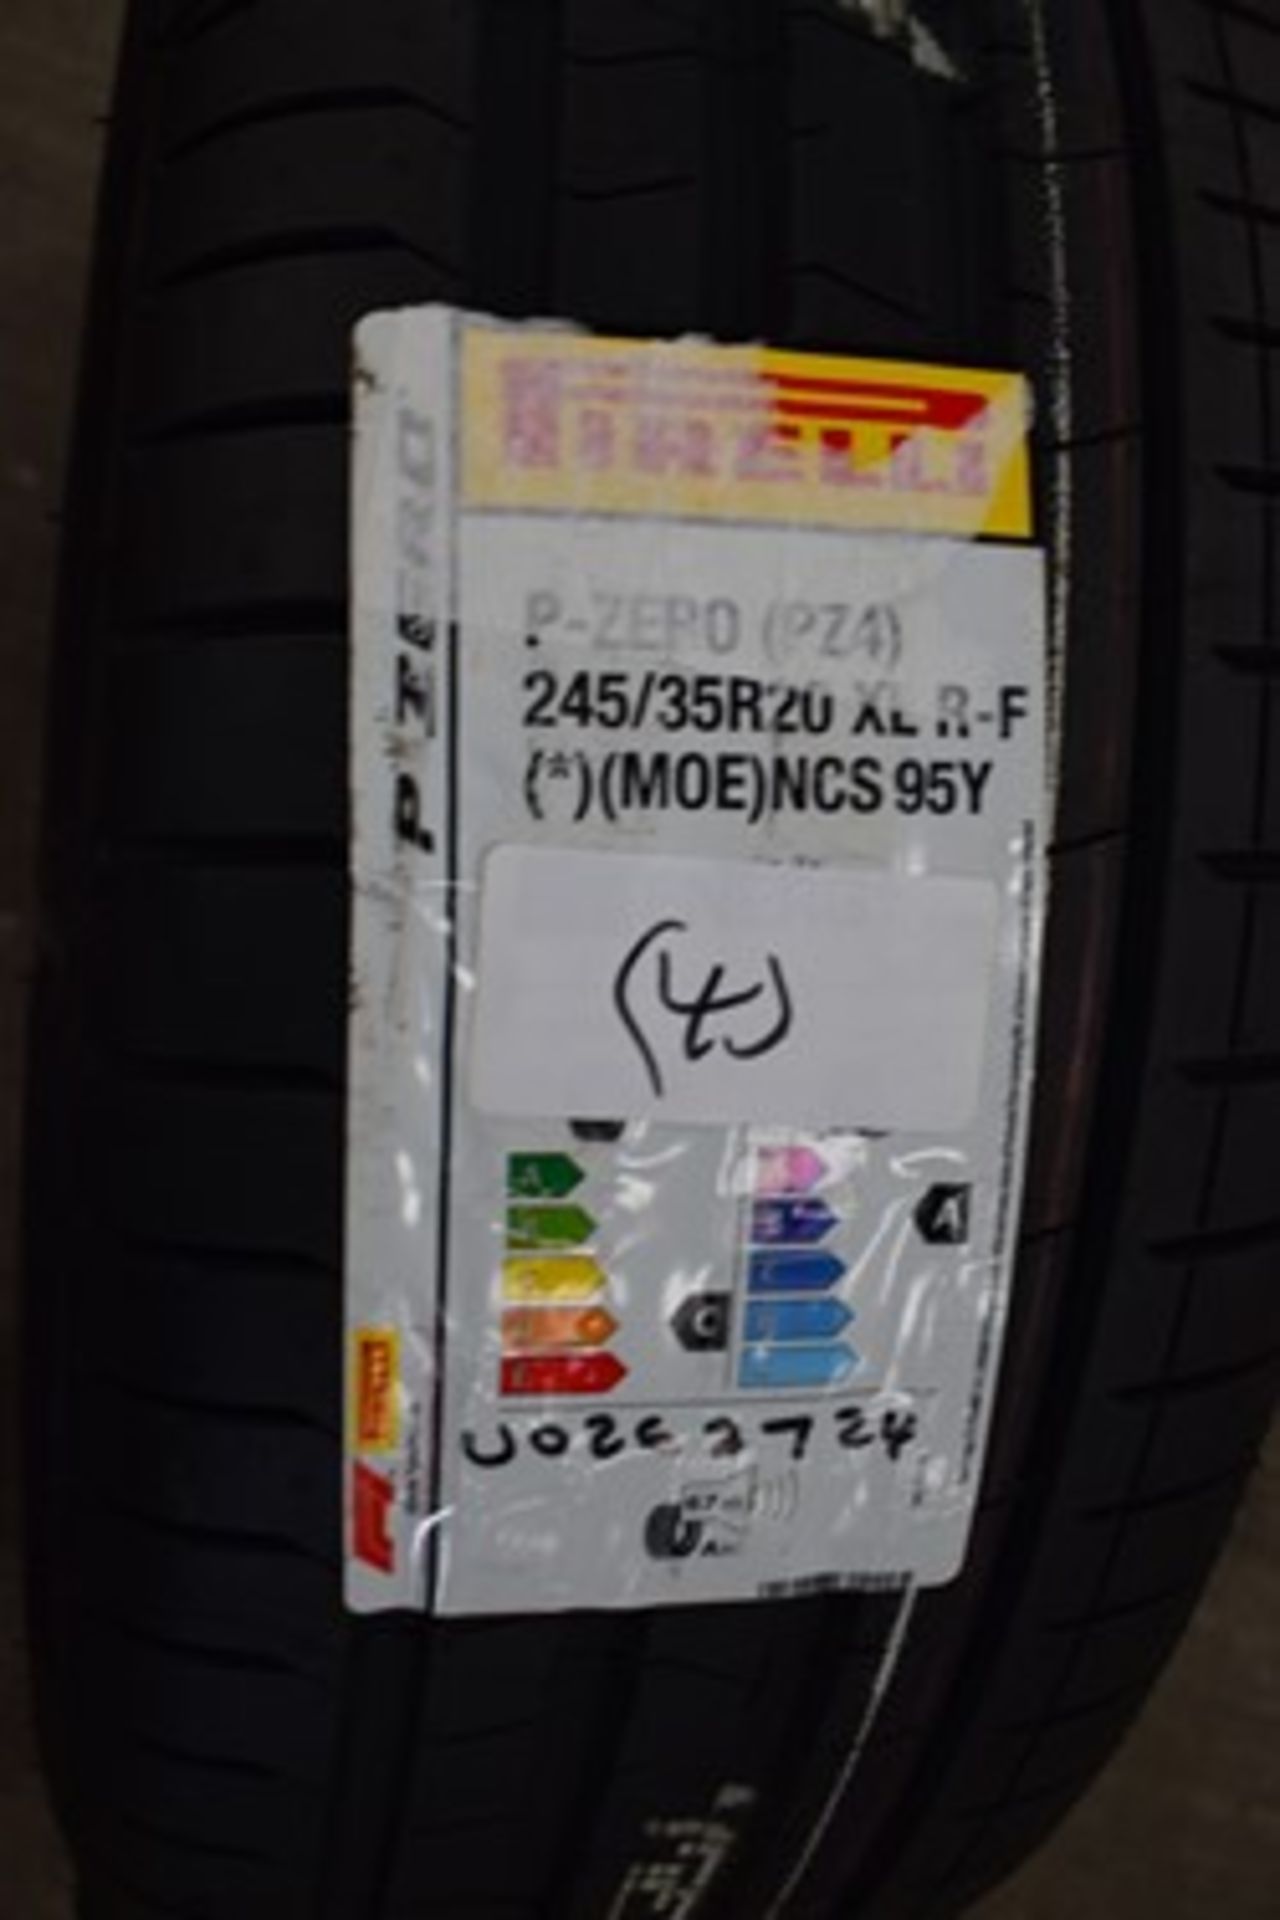 1 x Pirelli P-Zero (PZ4) tyre, size 245/35R20 95Y XL - new with label (C1)(4)